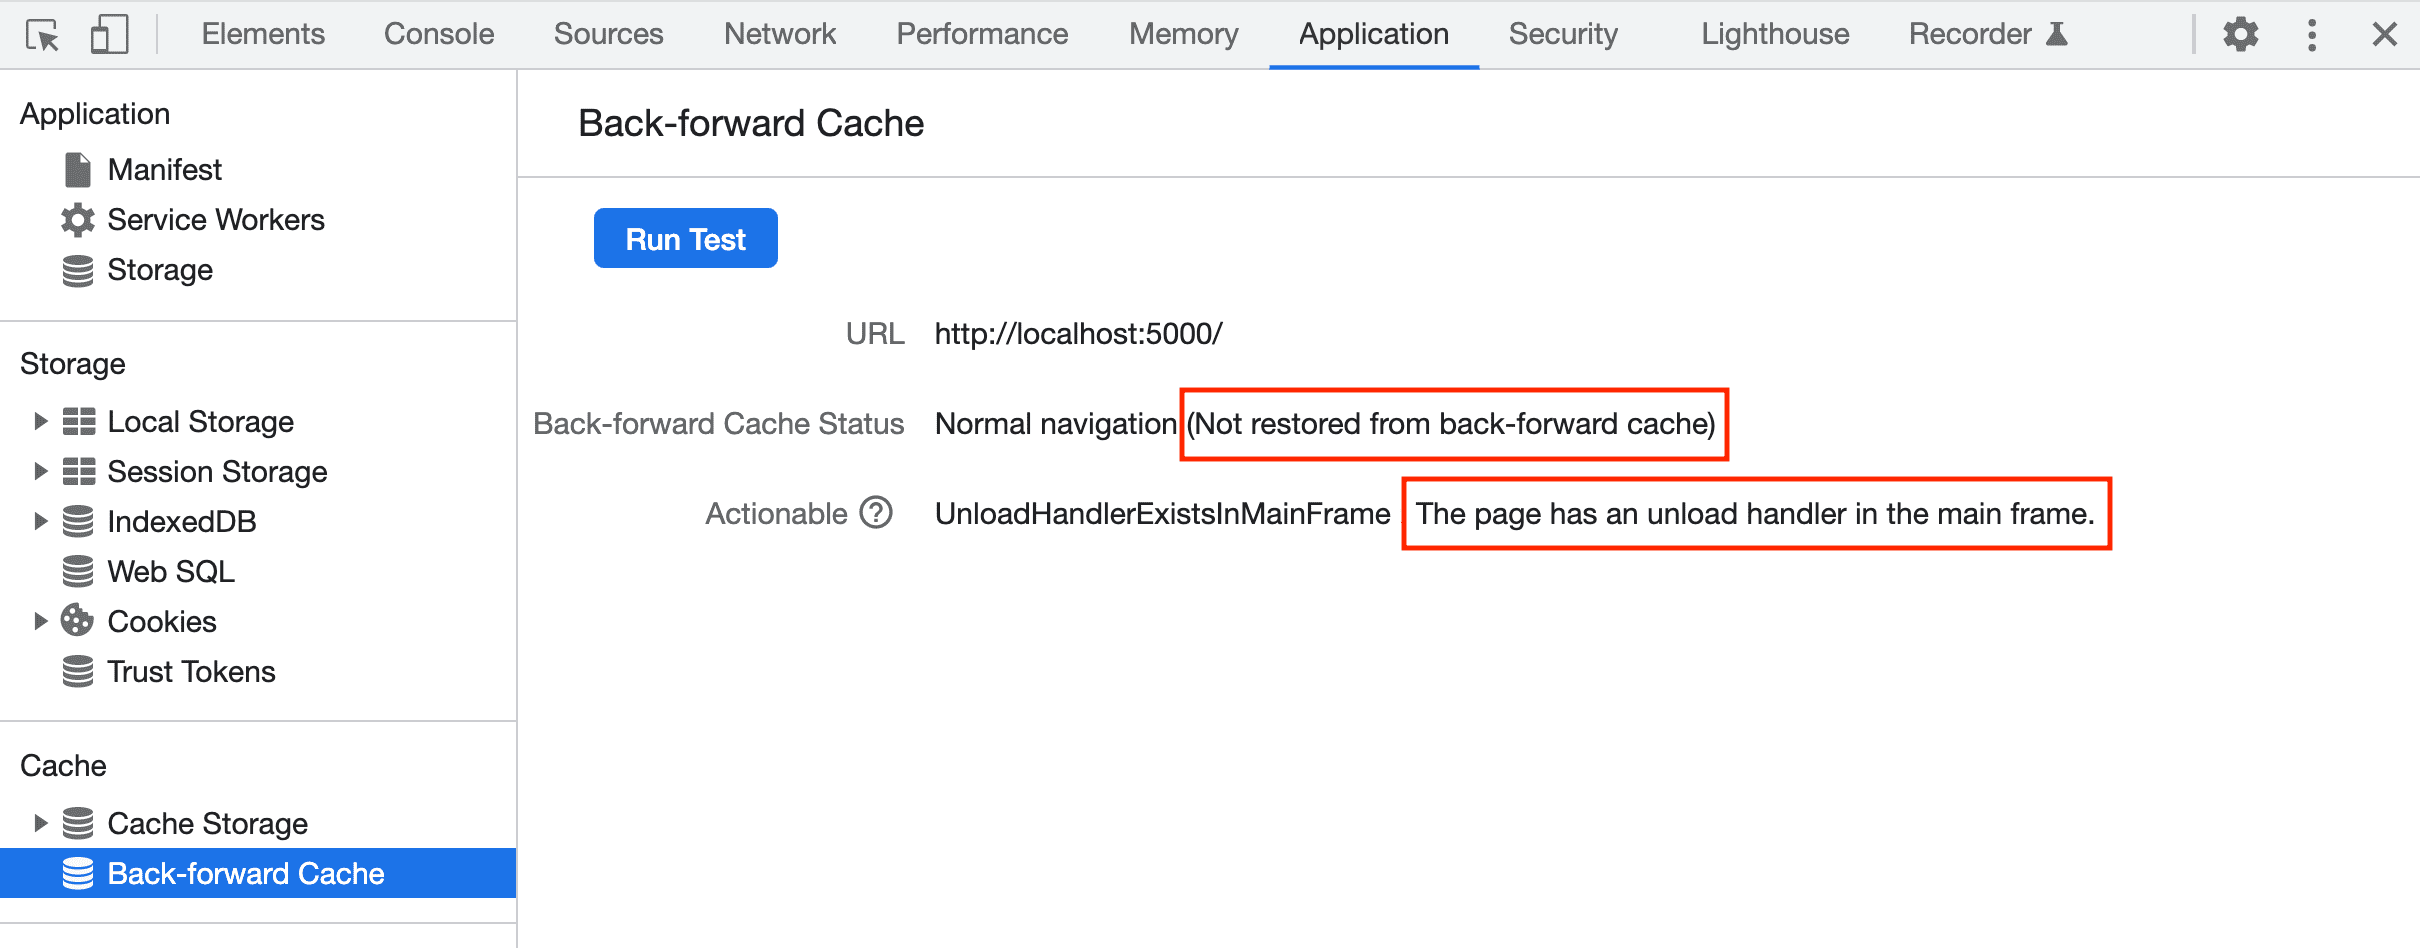 การรายงานเครื่องมือสำหรับนักพัฒนาเว็บไม่สามารถกู้คืนหน้าจาก bfcache ได้